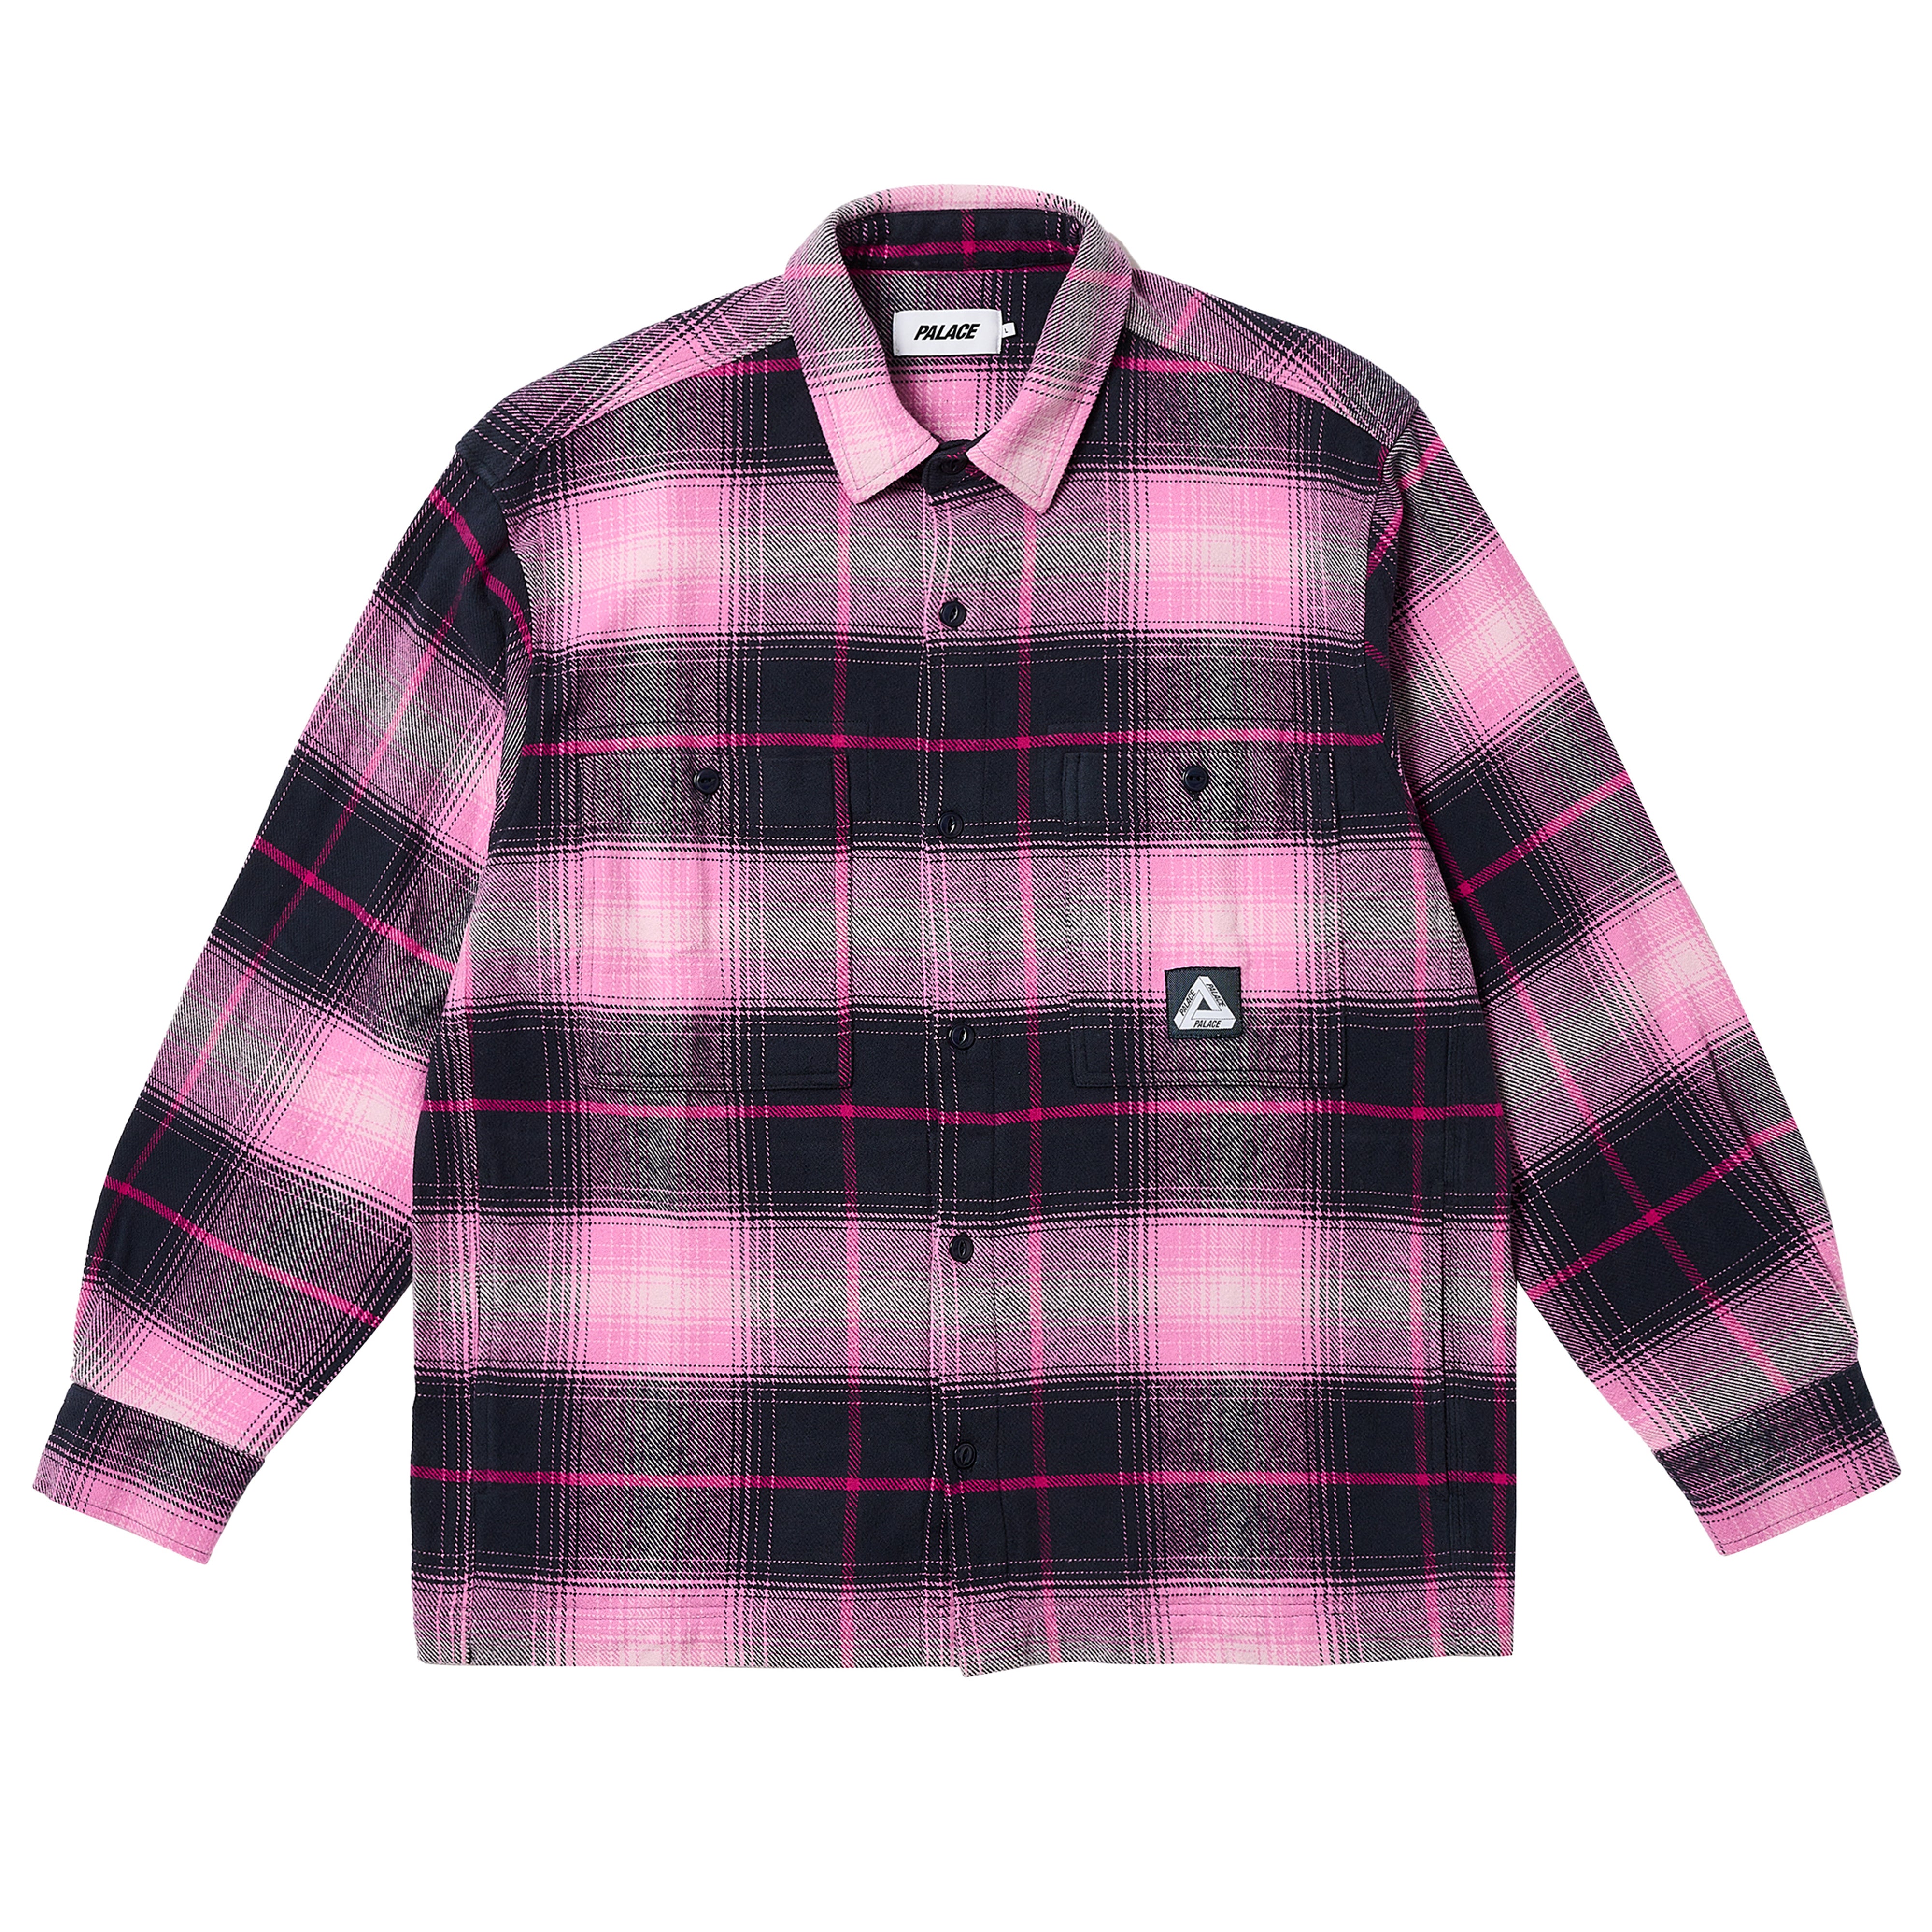 Palace - Men's Work Shirt - (Navy/Pink)